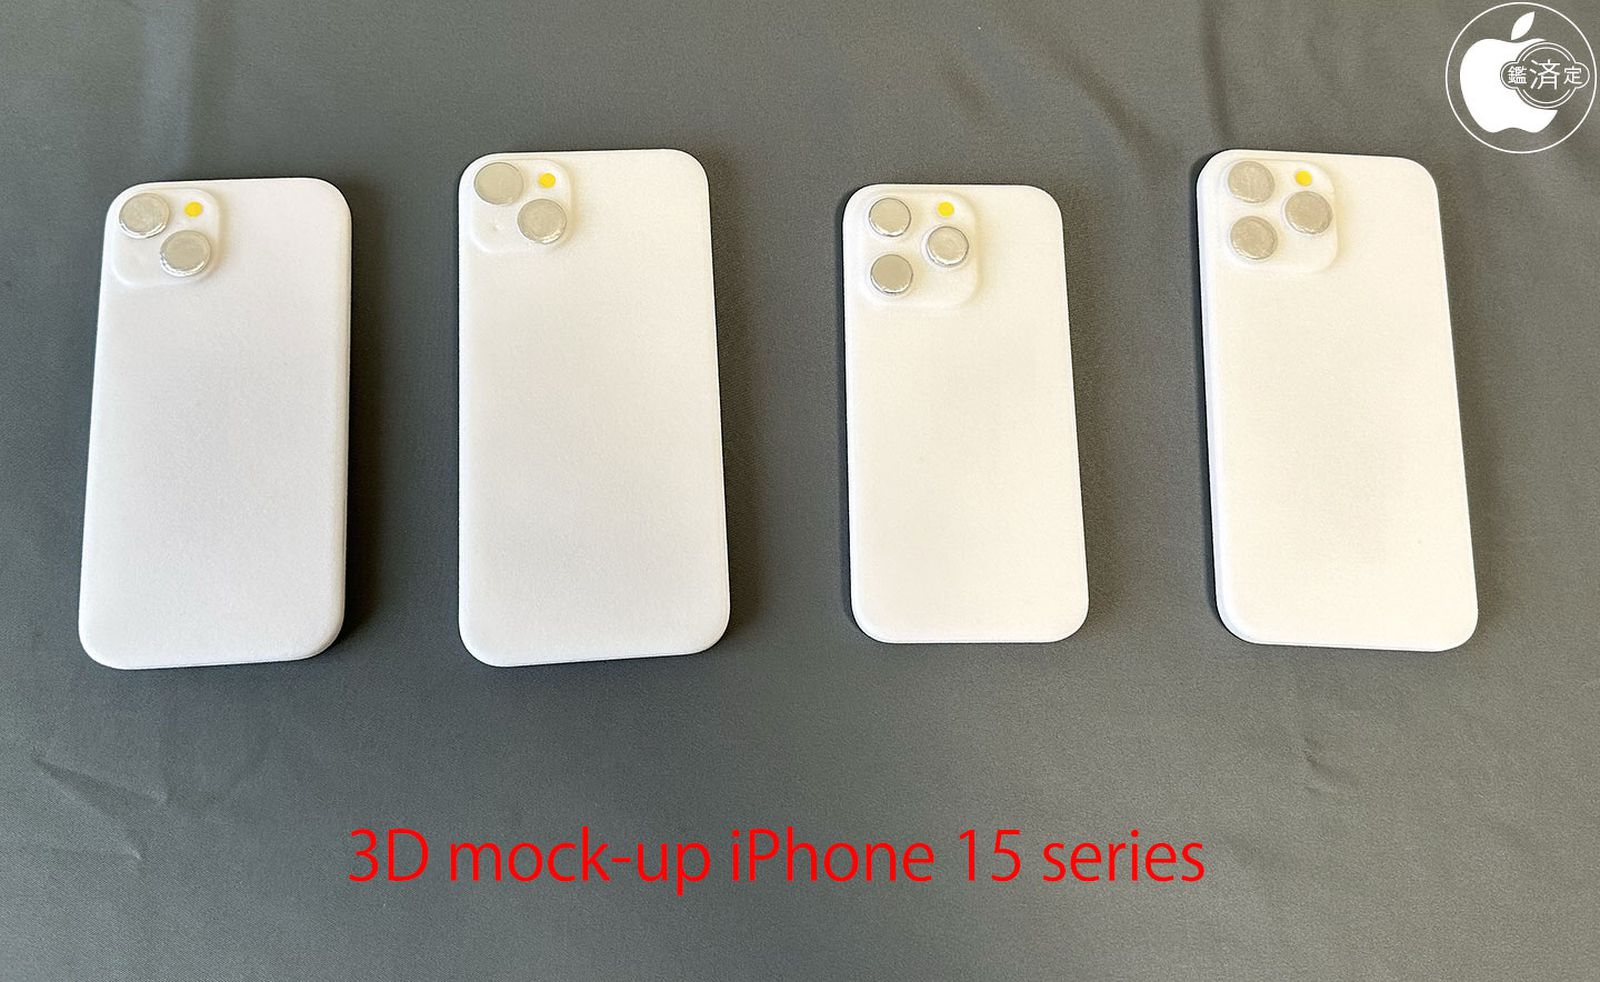 Modelos de iPhone 15 impresos en 3D utilizados para probar la compatibilidad con iPhone 14